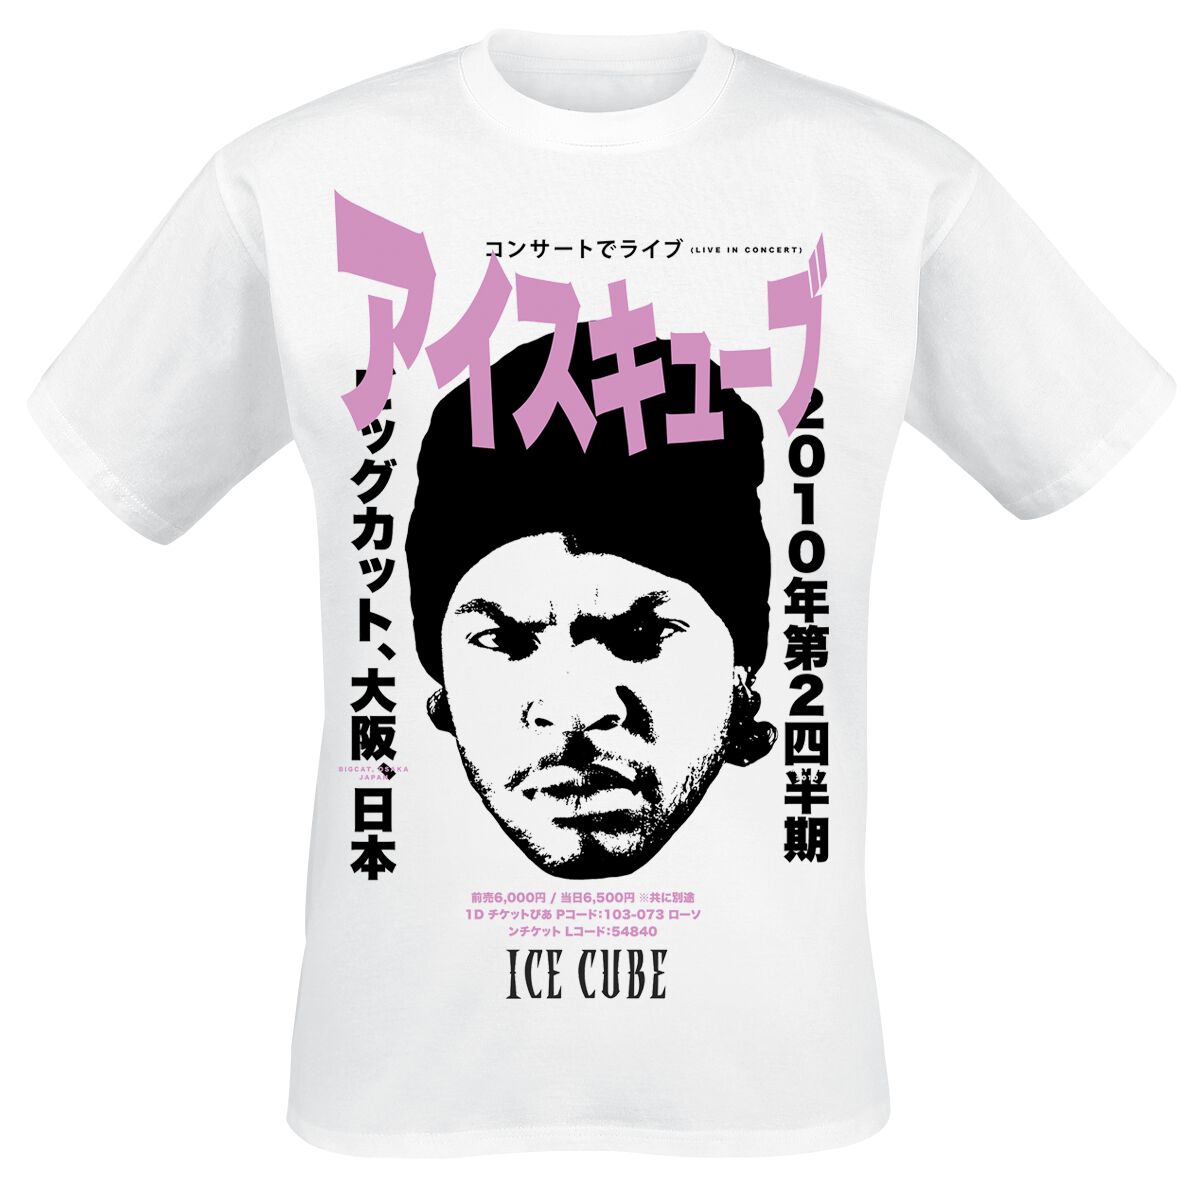 Ice Cube T-Shirt - Kanji - S bis L - für Männer - Größe L - weiß  - Lizenziertes Merchandise!